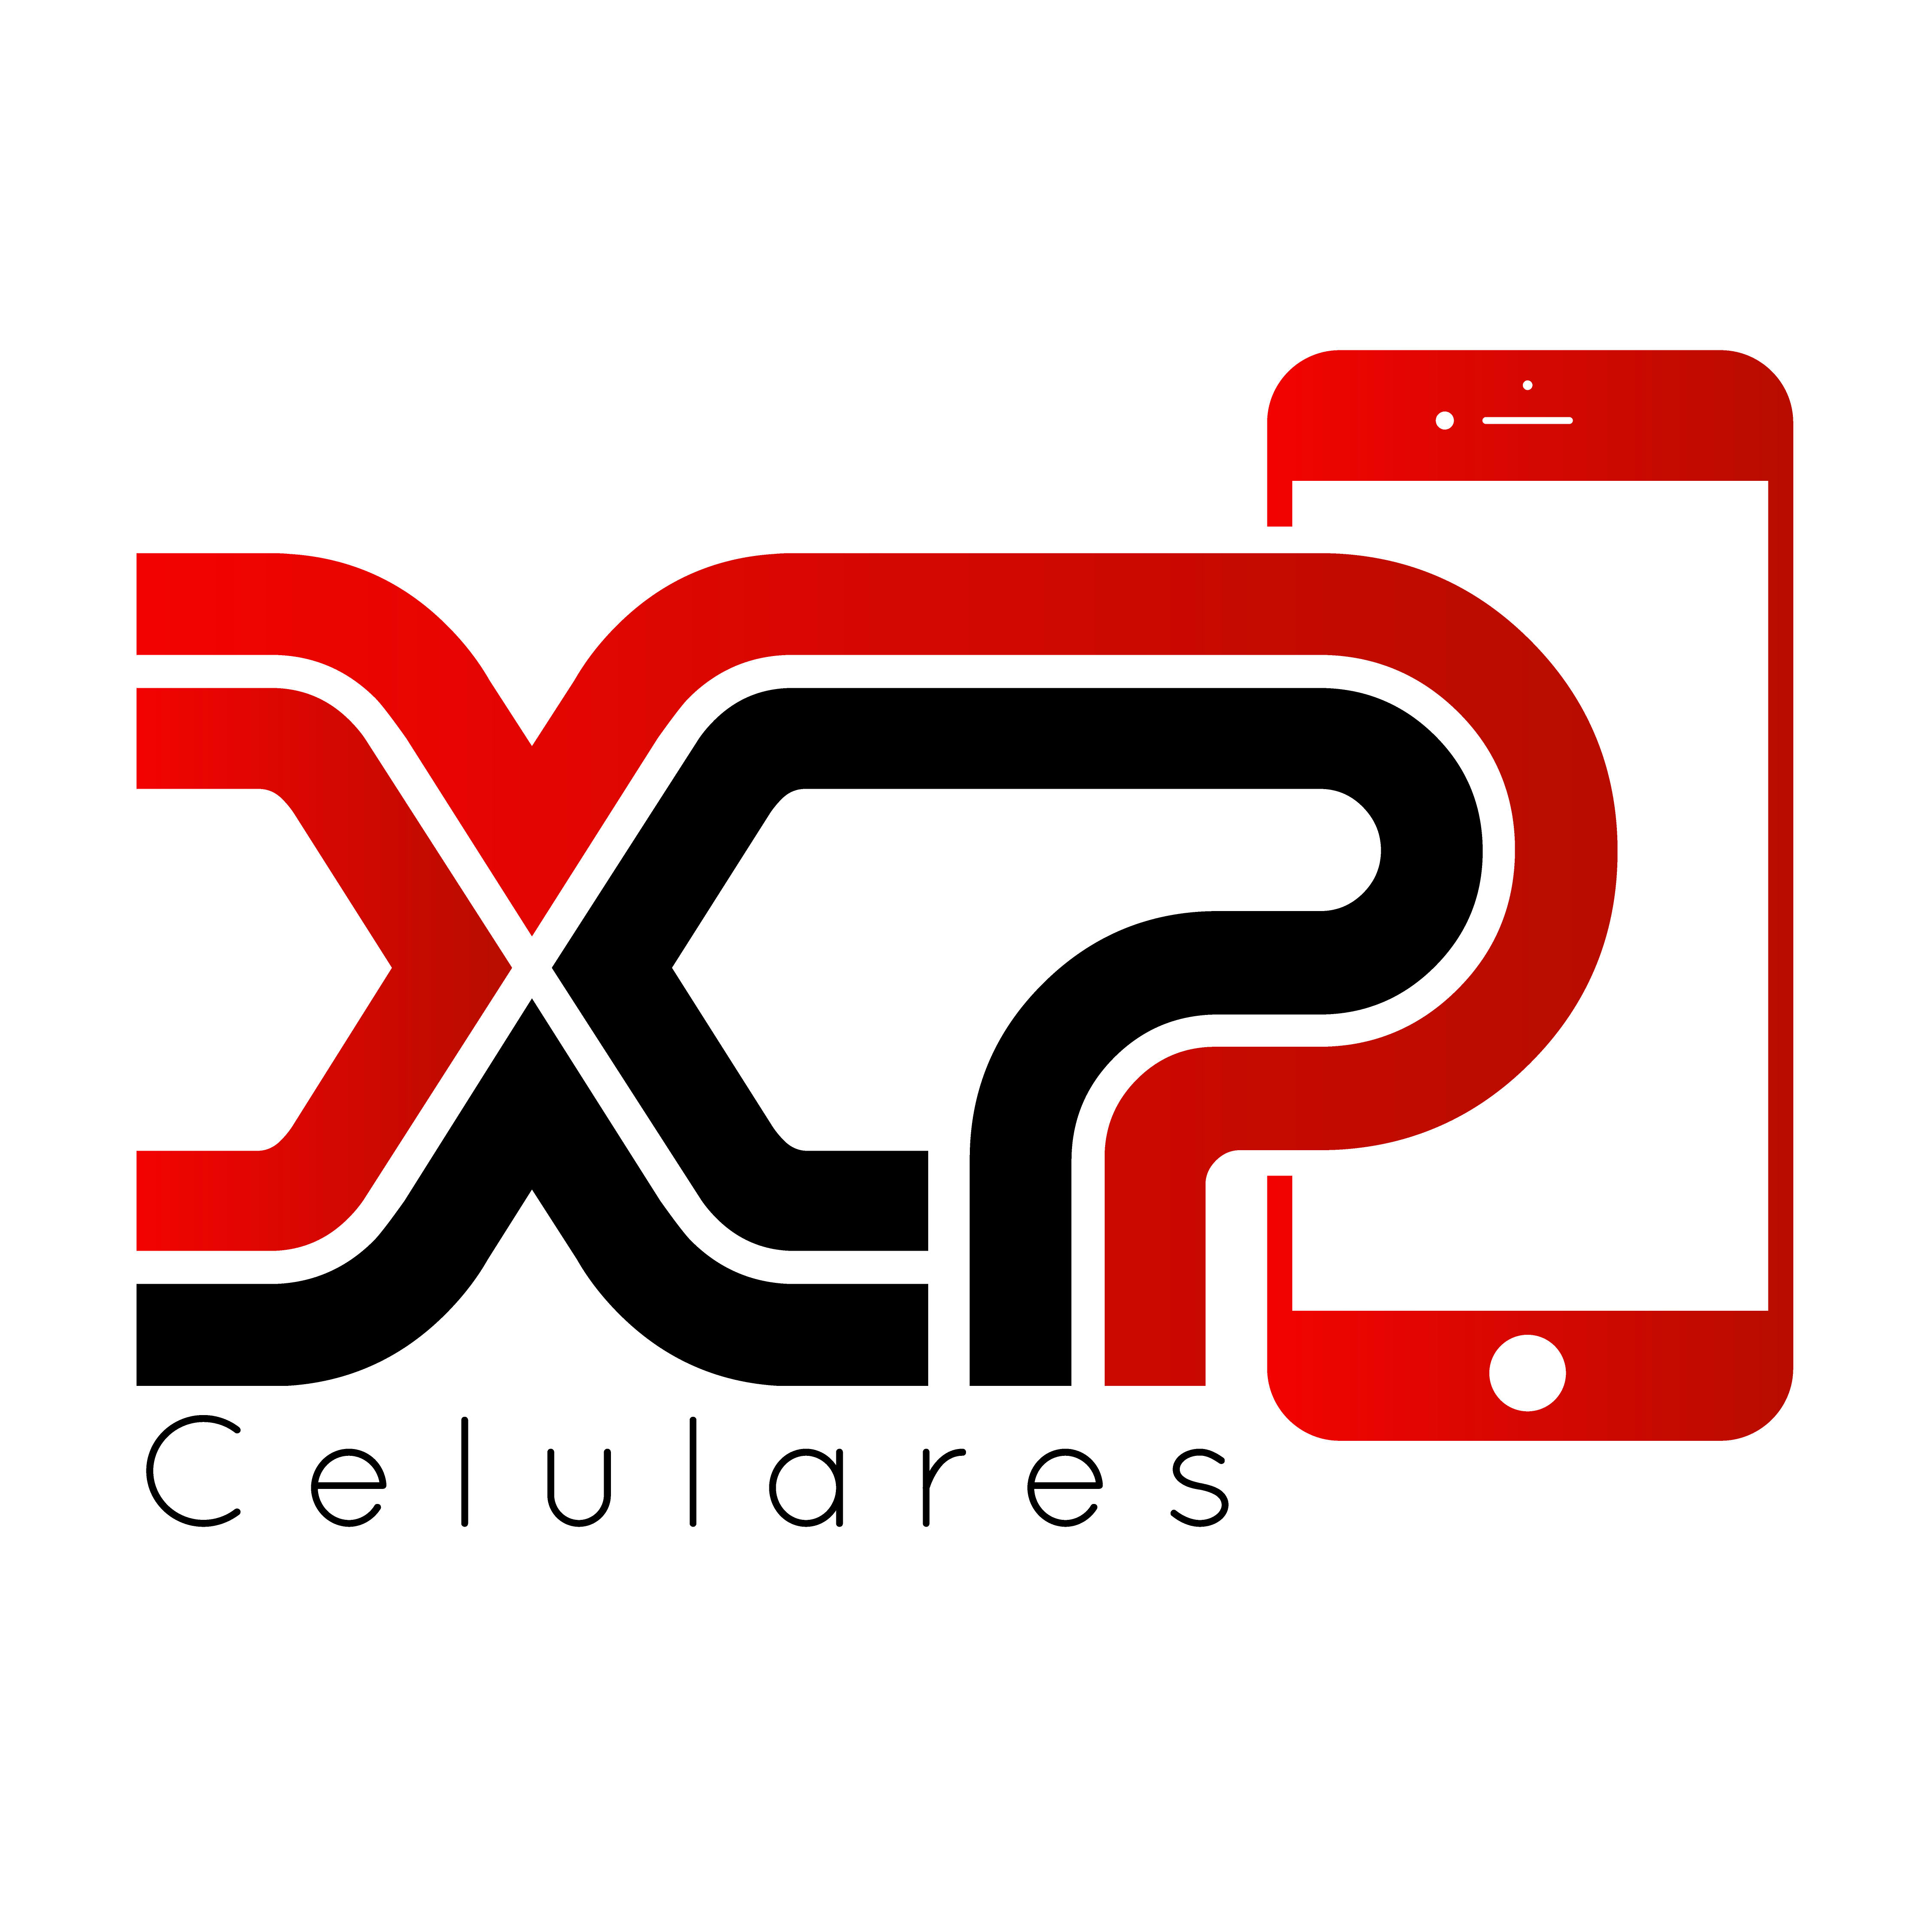 XP Celulares